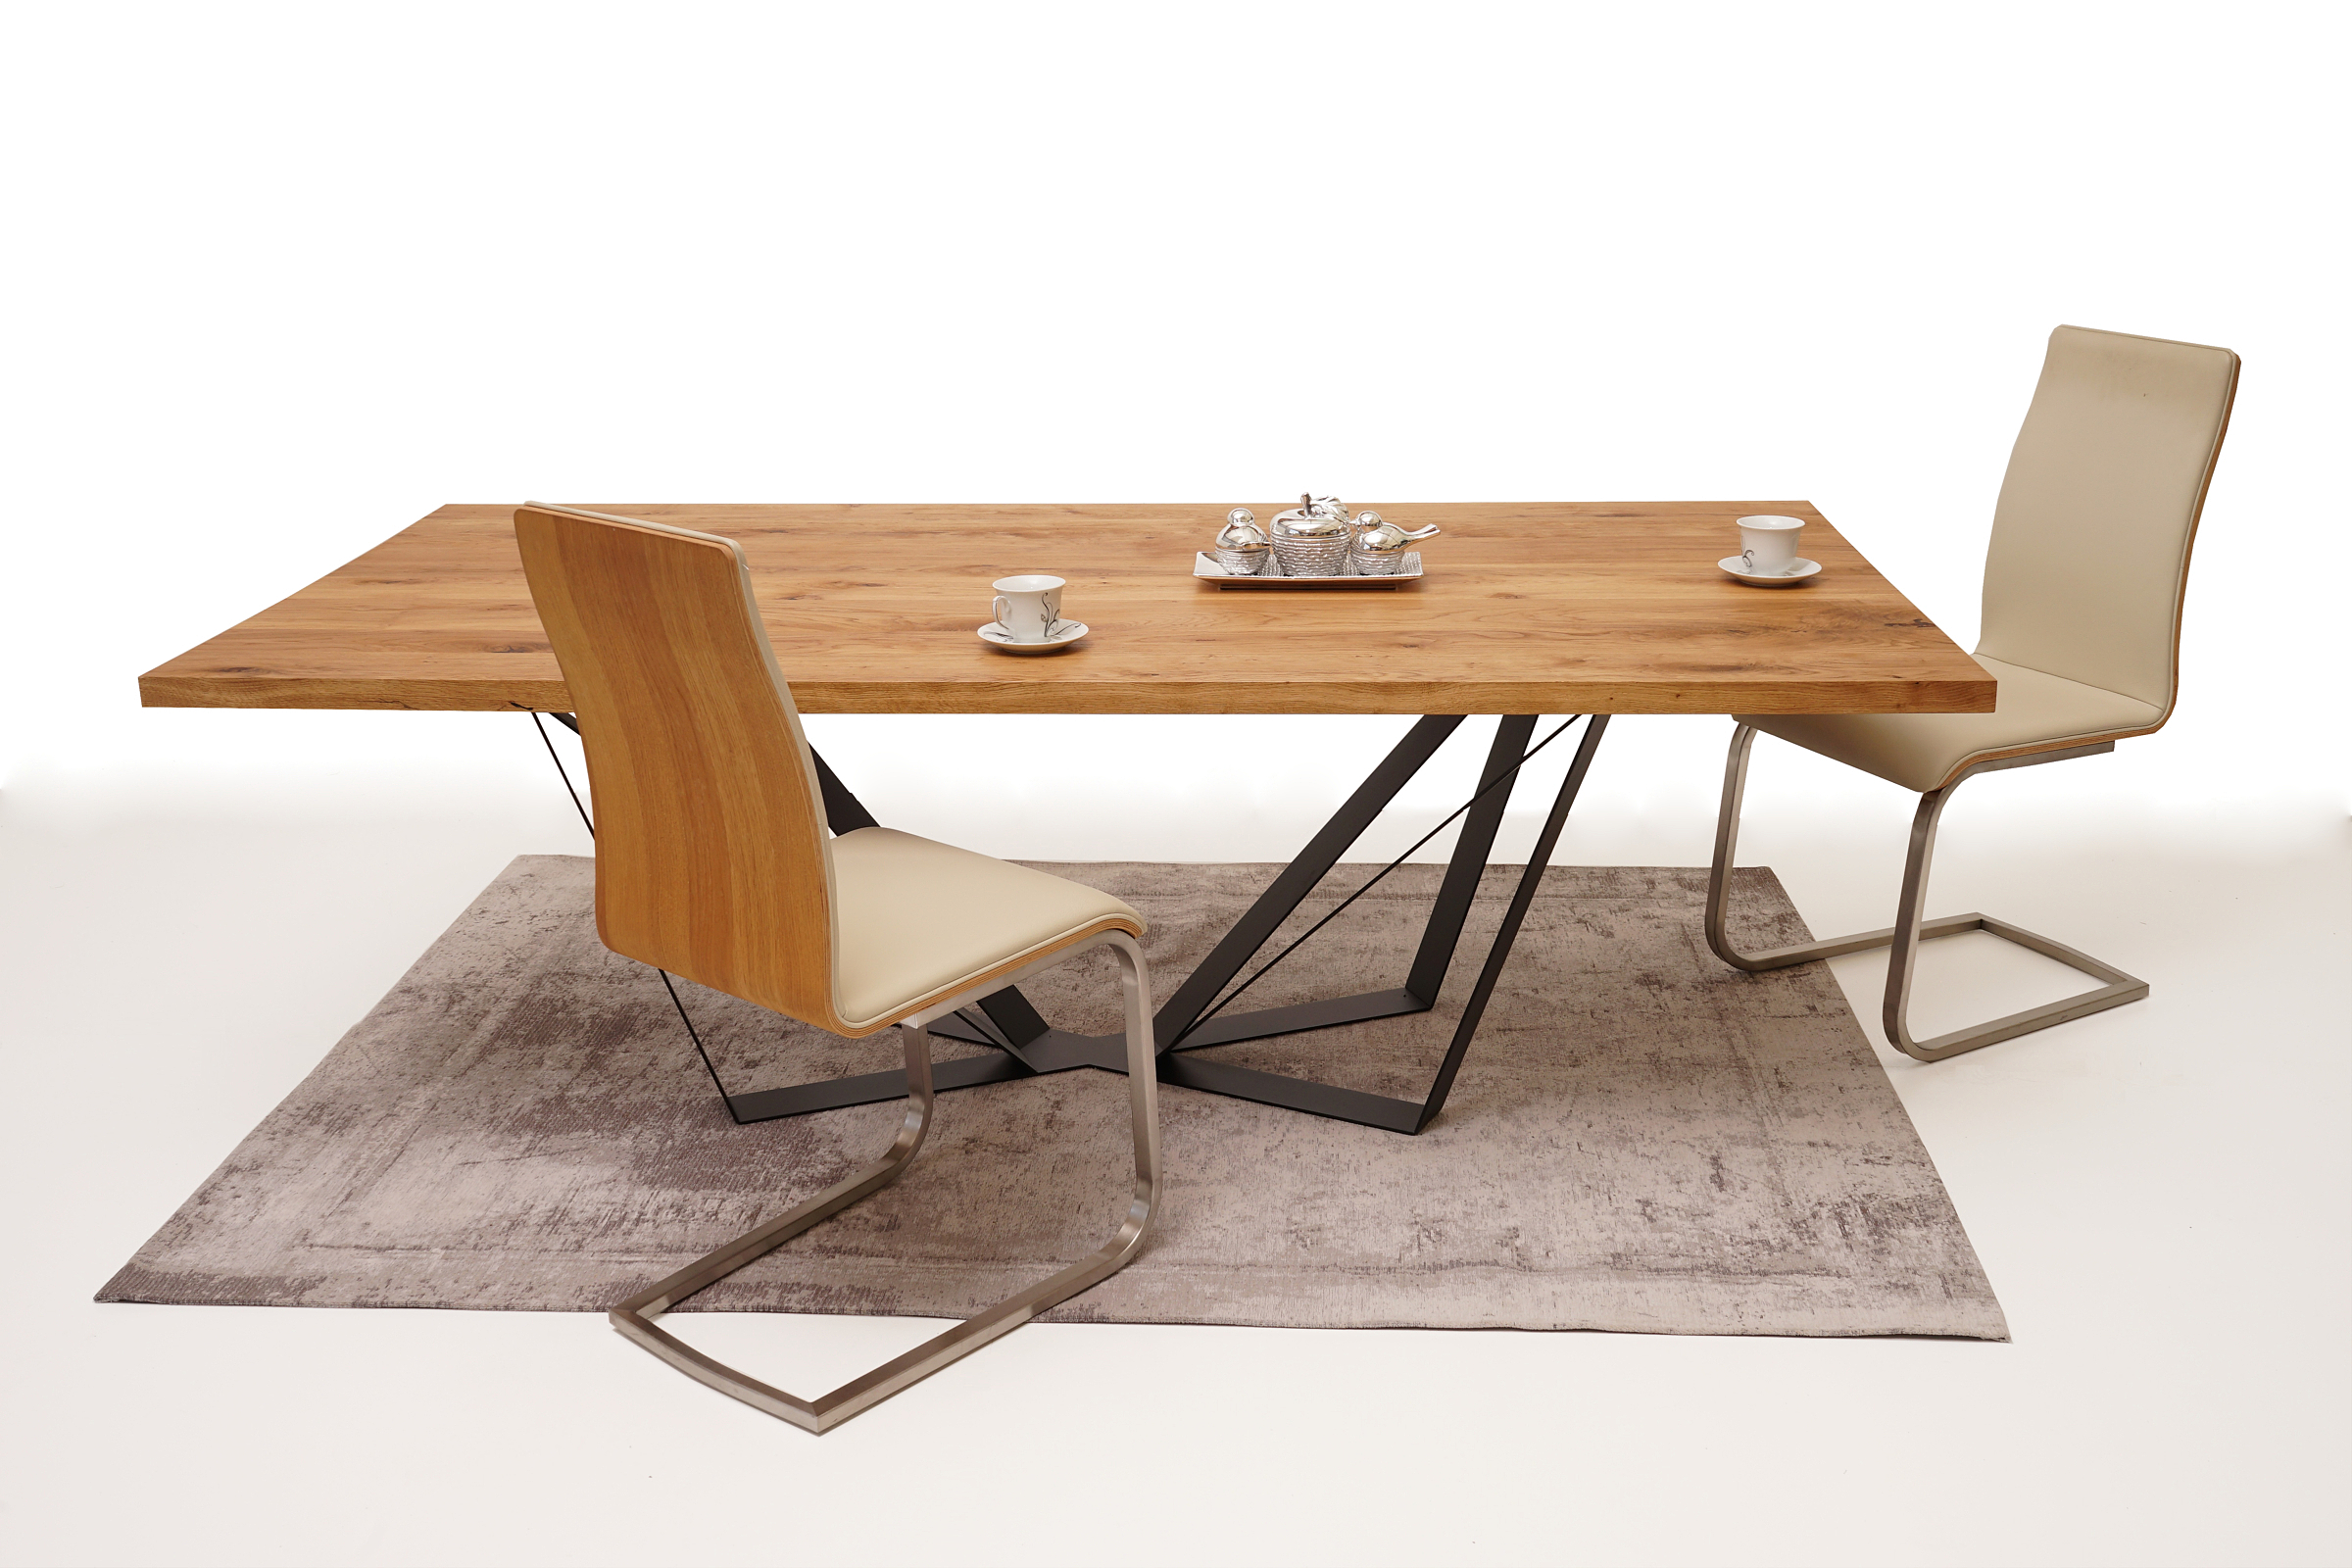 Paola ciekawy pomysł na jadalnię nowoczesny stol dębowy z metalowymi nogami loftowy krzesła metalowe z oparciem drewnianym orzech amerykański